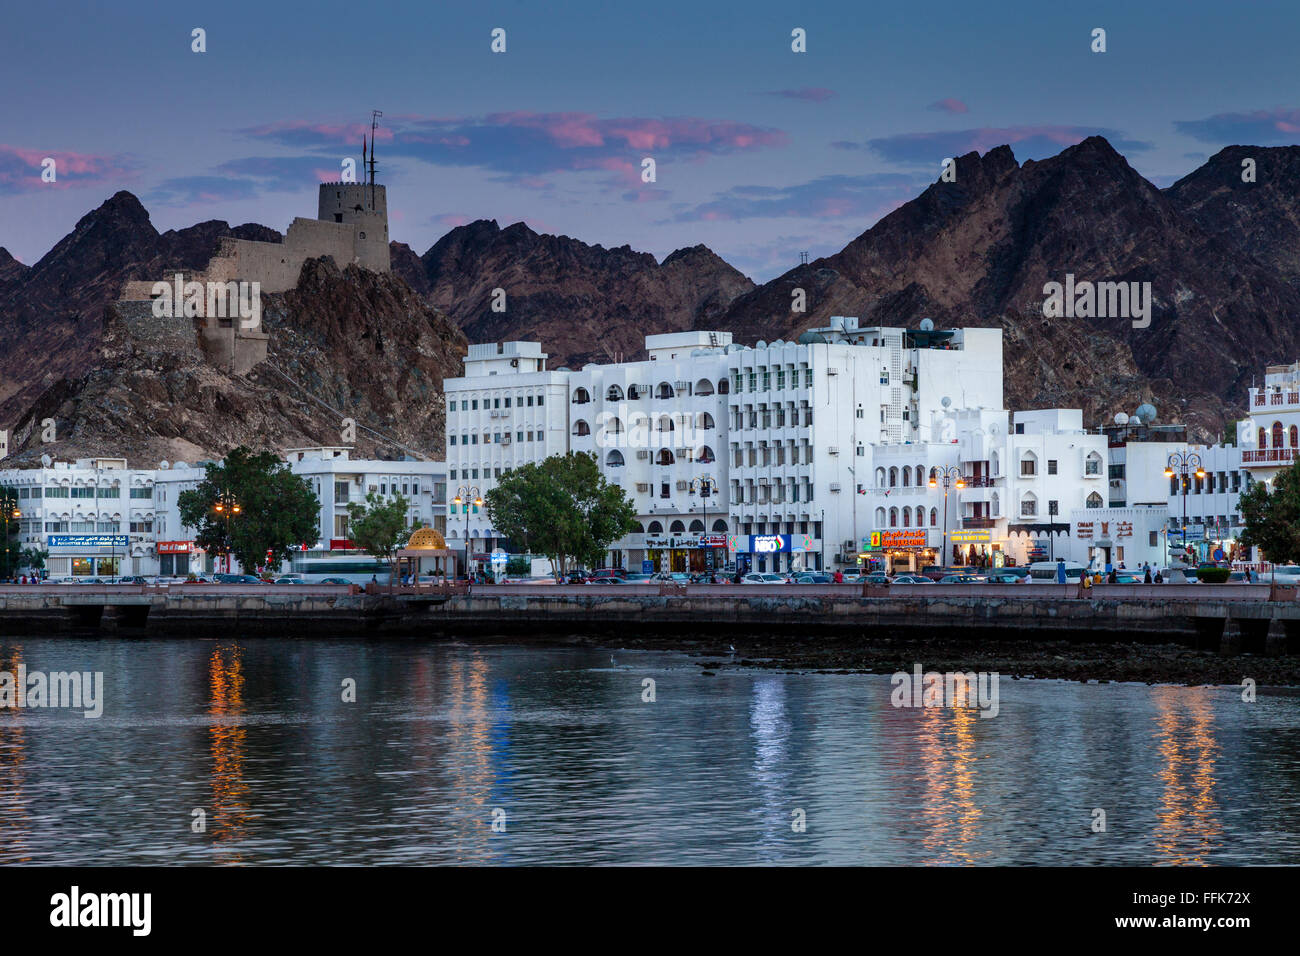 The Corniche (Promenade) At Muttrah, Muscat, Sultanate Of Oman Stock Photo